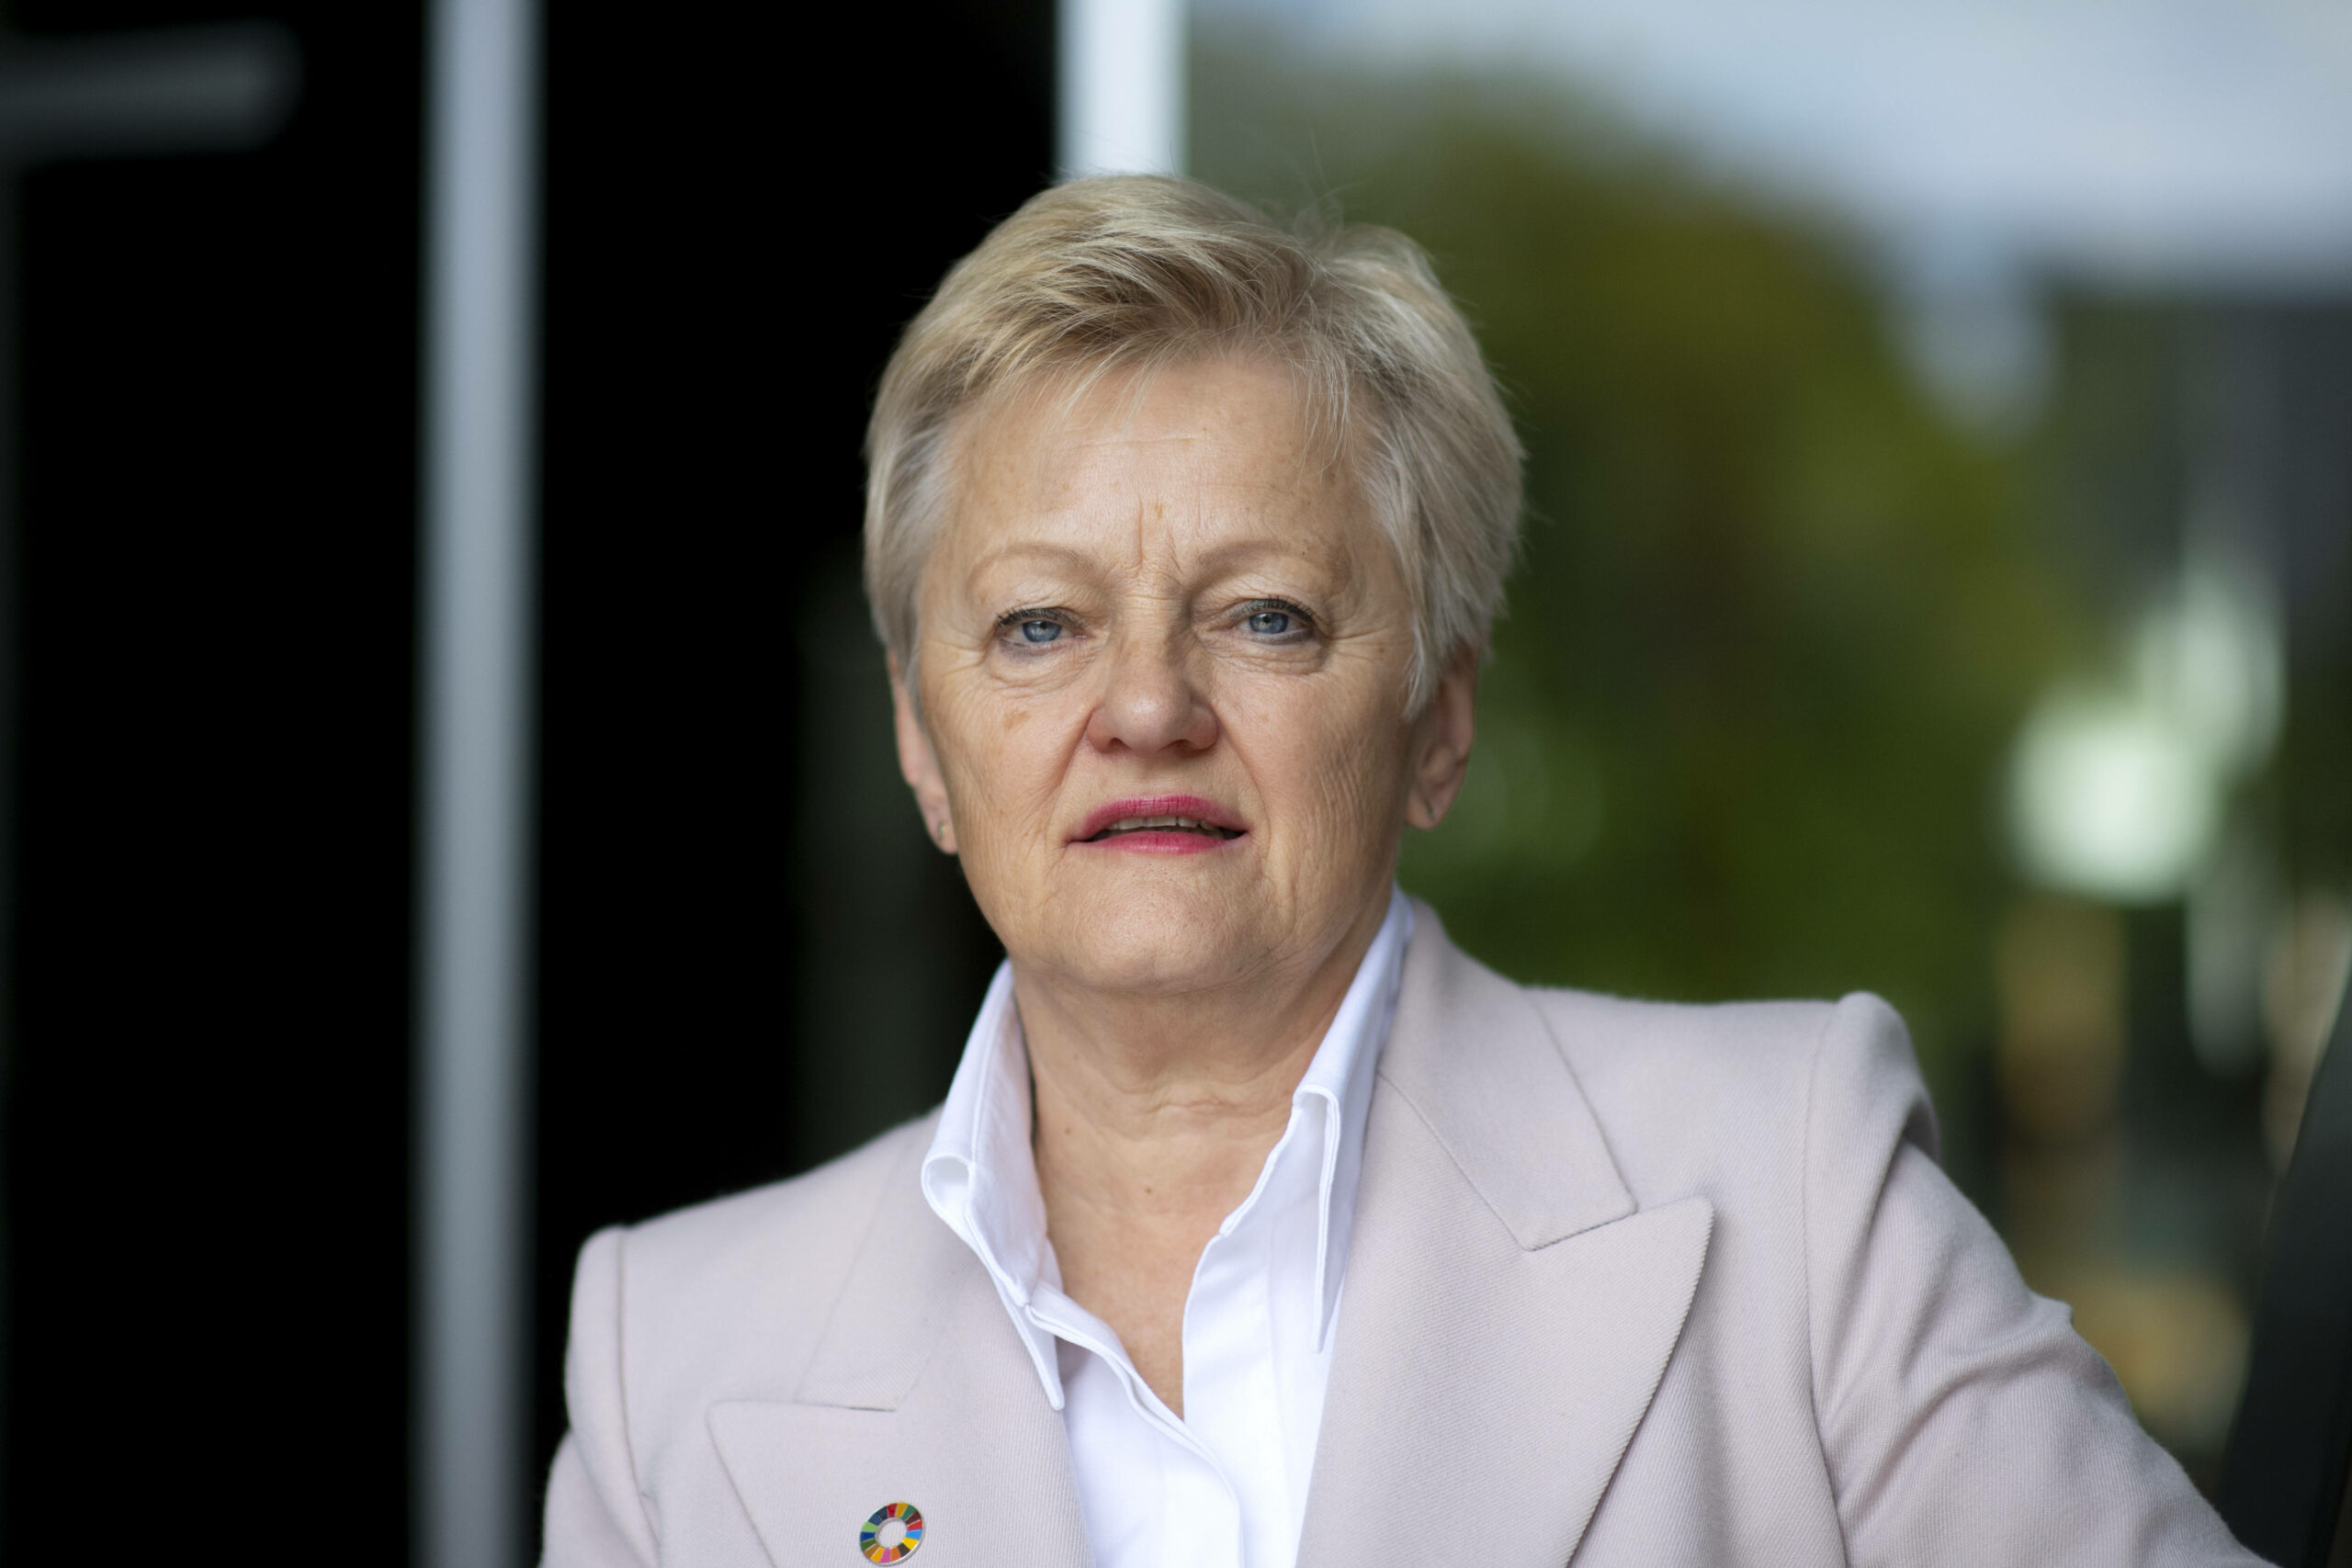 Man sieht ein Porträt der Grünenpolitikerin Renate Künast in einer weißen Bluse und einem altrosa Blazer.